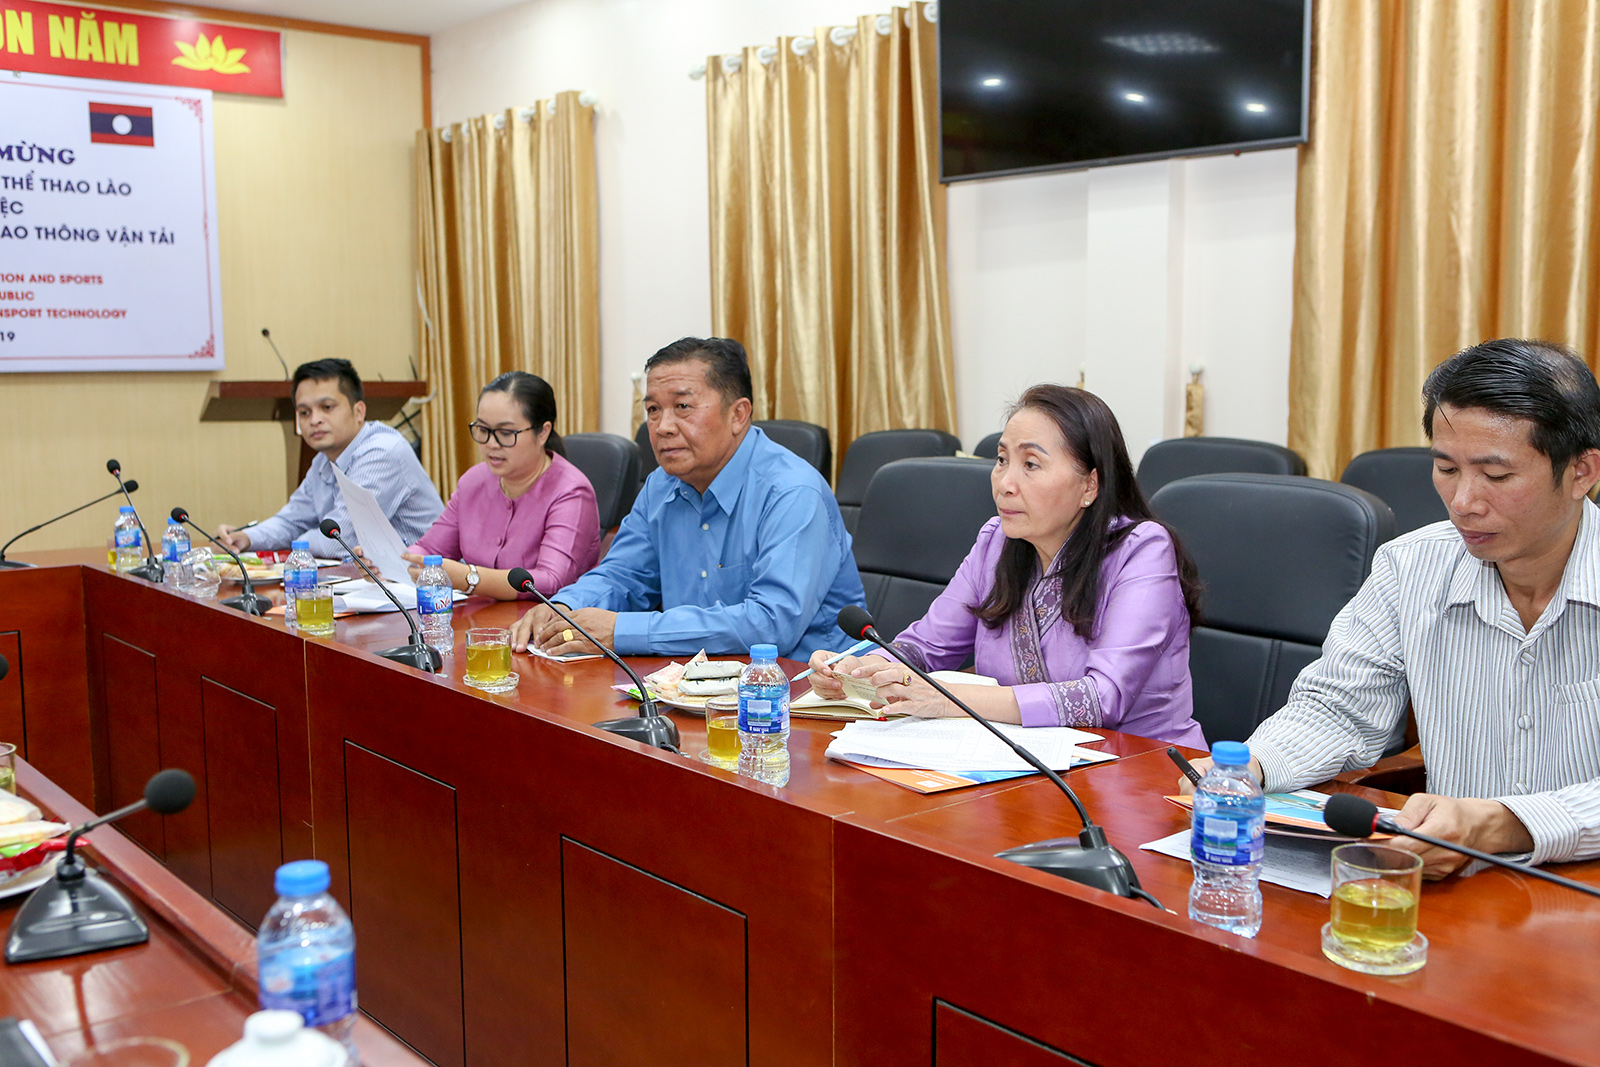 Đoàn Bộ Giáo dục và Thể thao Lào thăm và làm việc tại Trường Đại học Công nghệ GTVT